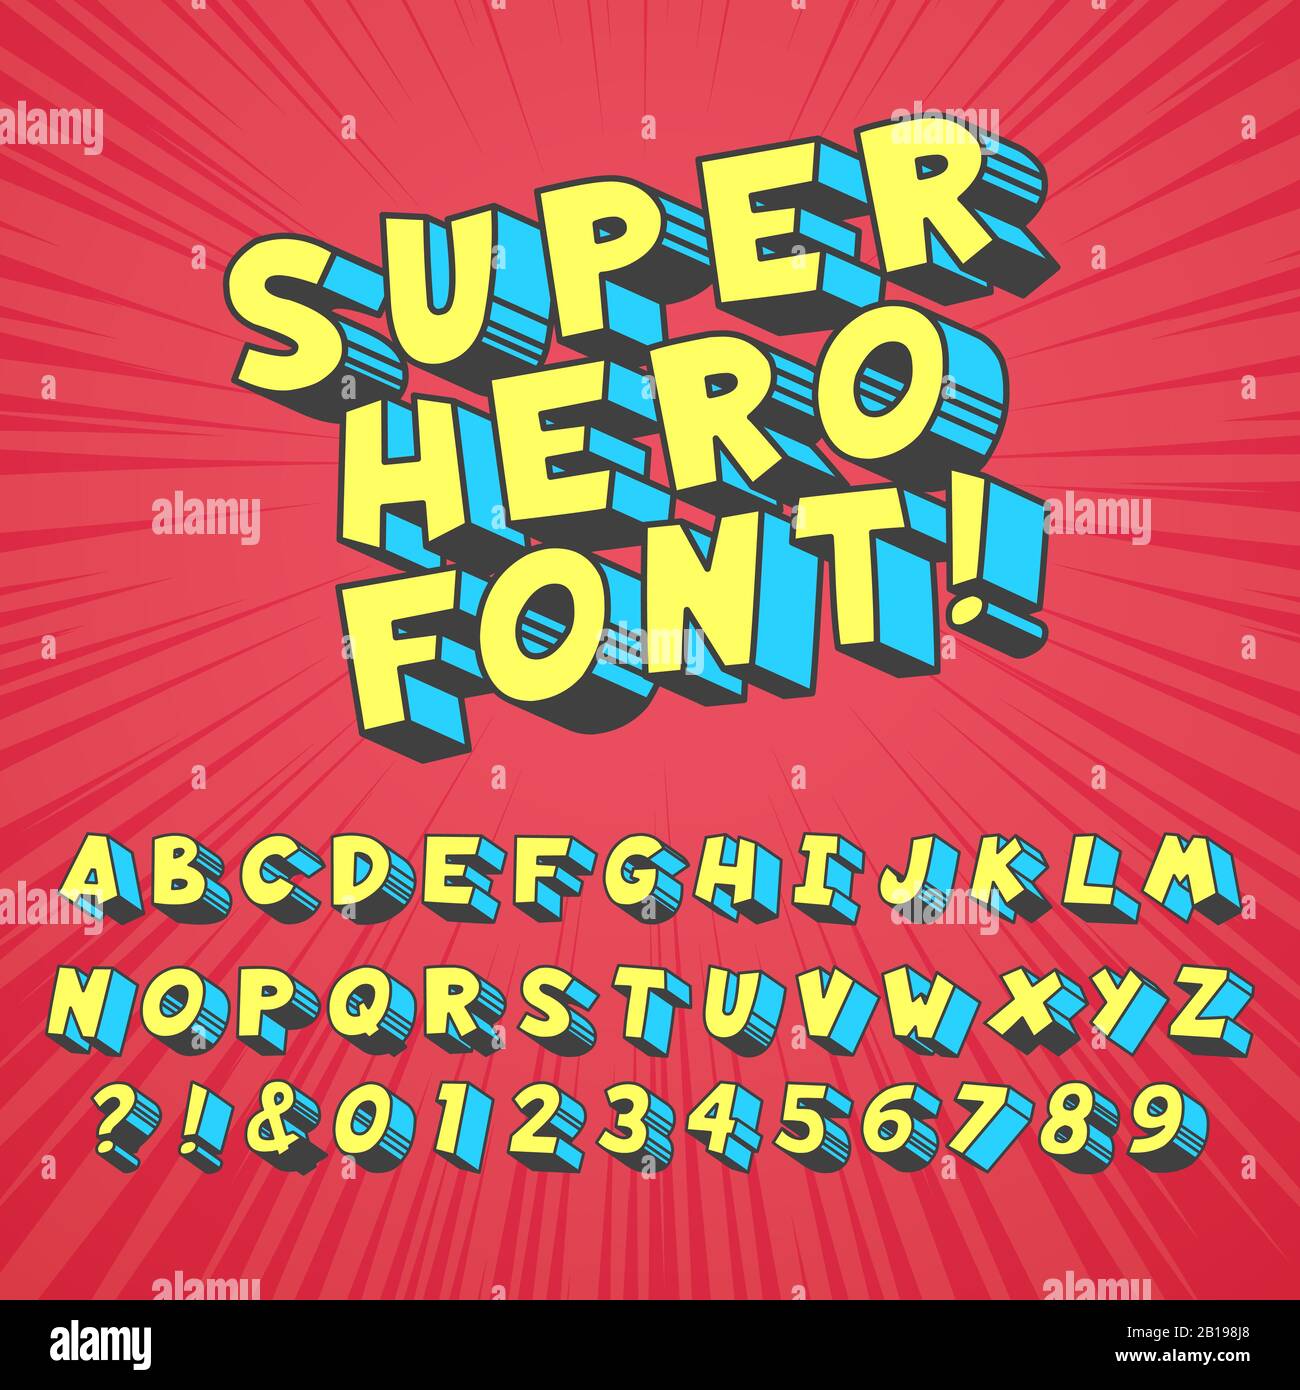 Police Super HERO comics. Typographie graphique comique, drôle de supers heros alphabet et des polices créatives lettres symbole vecteur ensemble Illustration de Vecteur